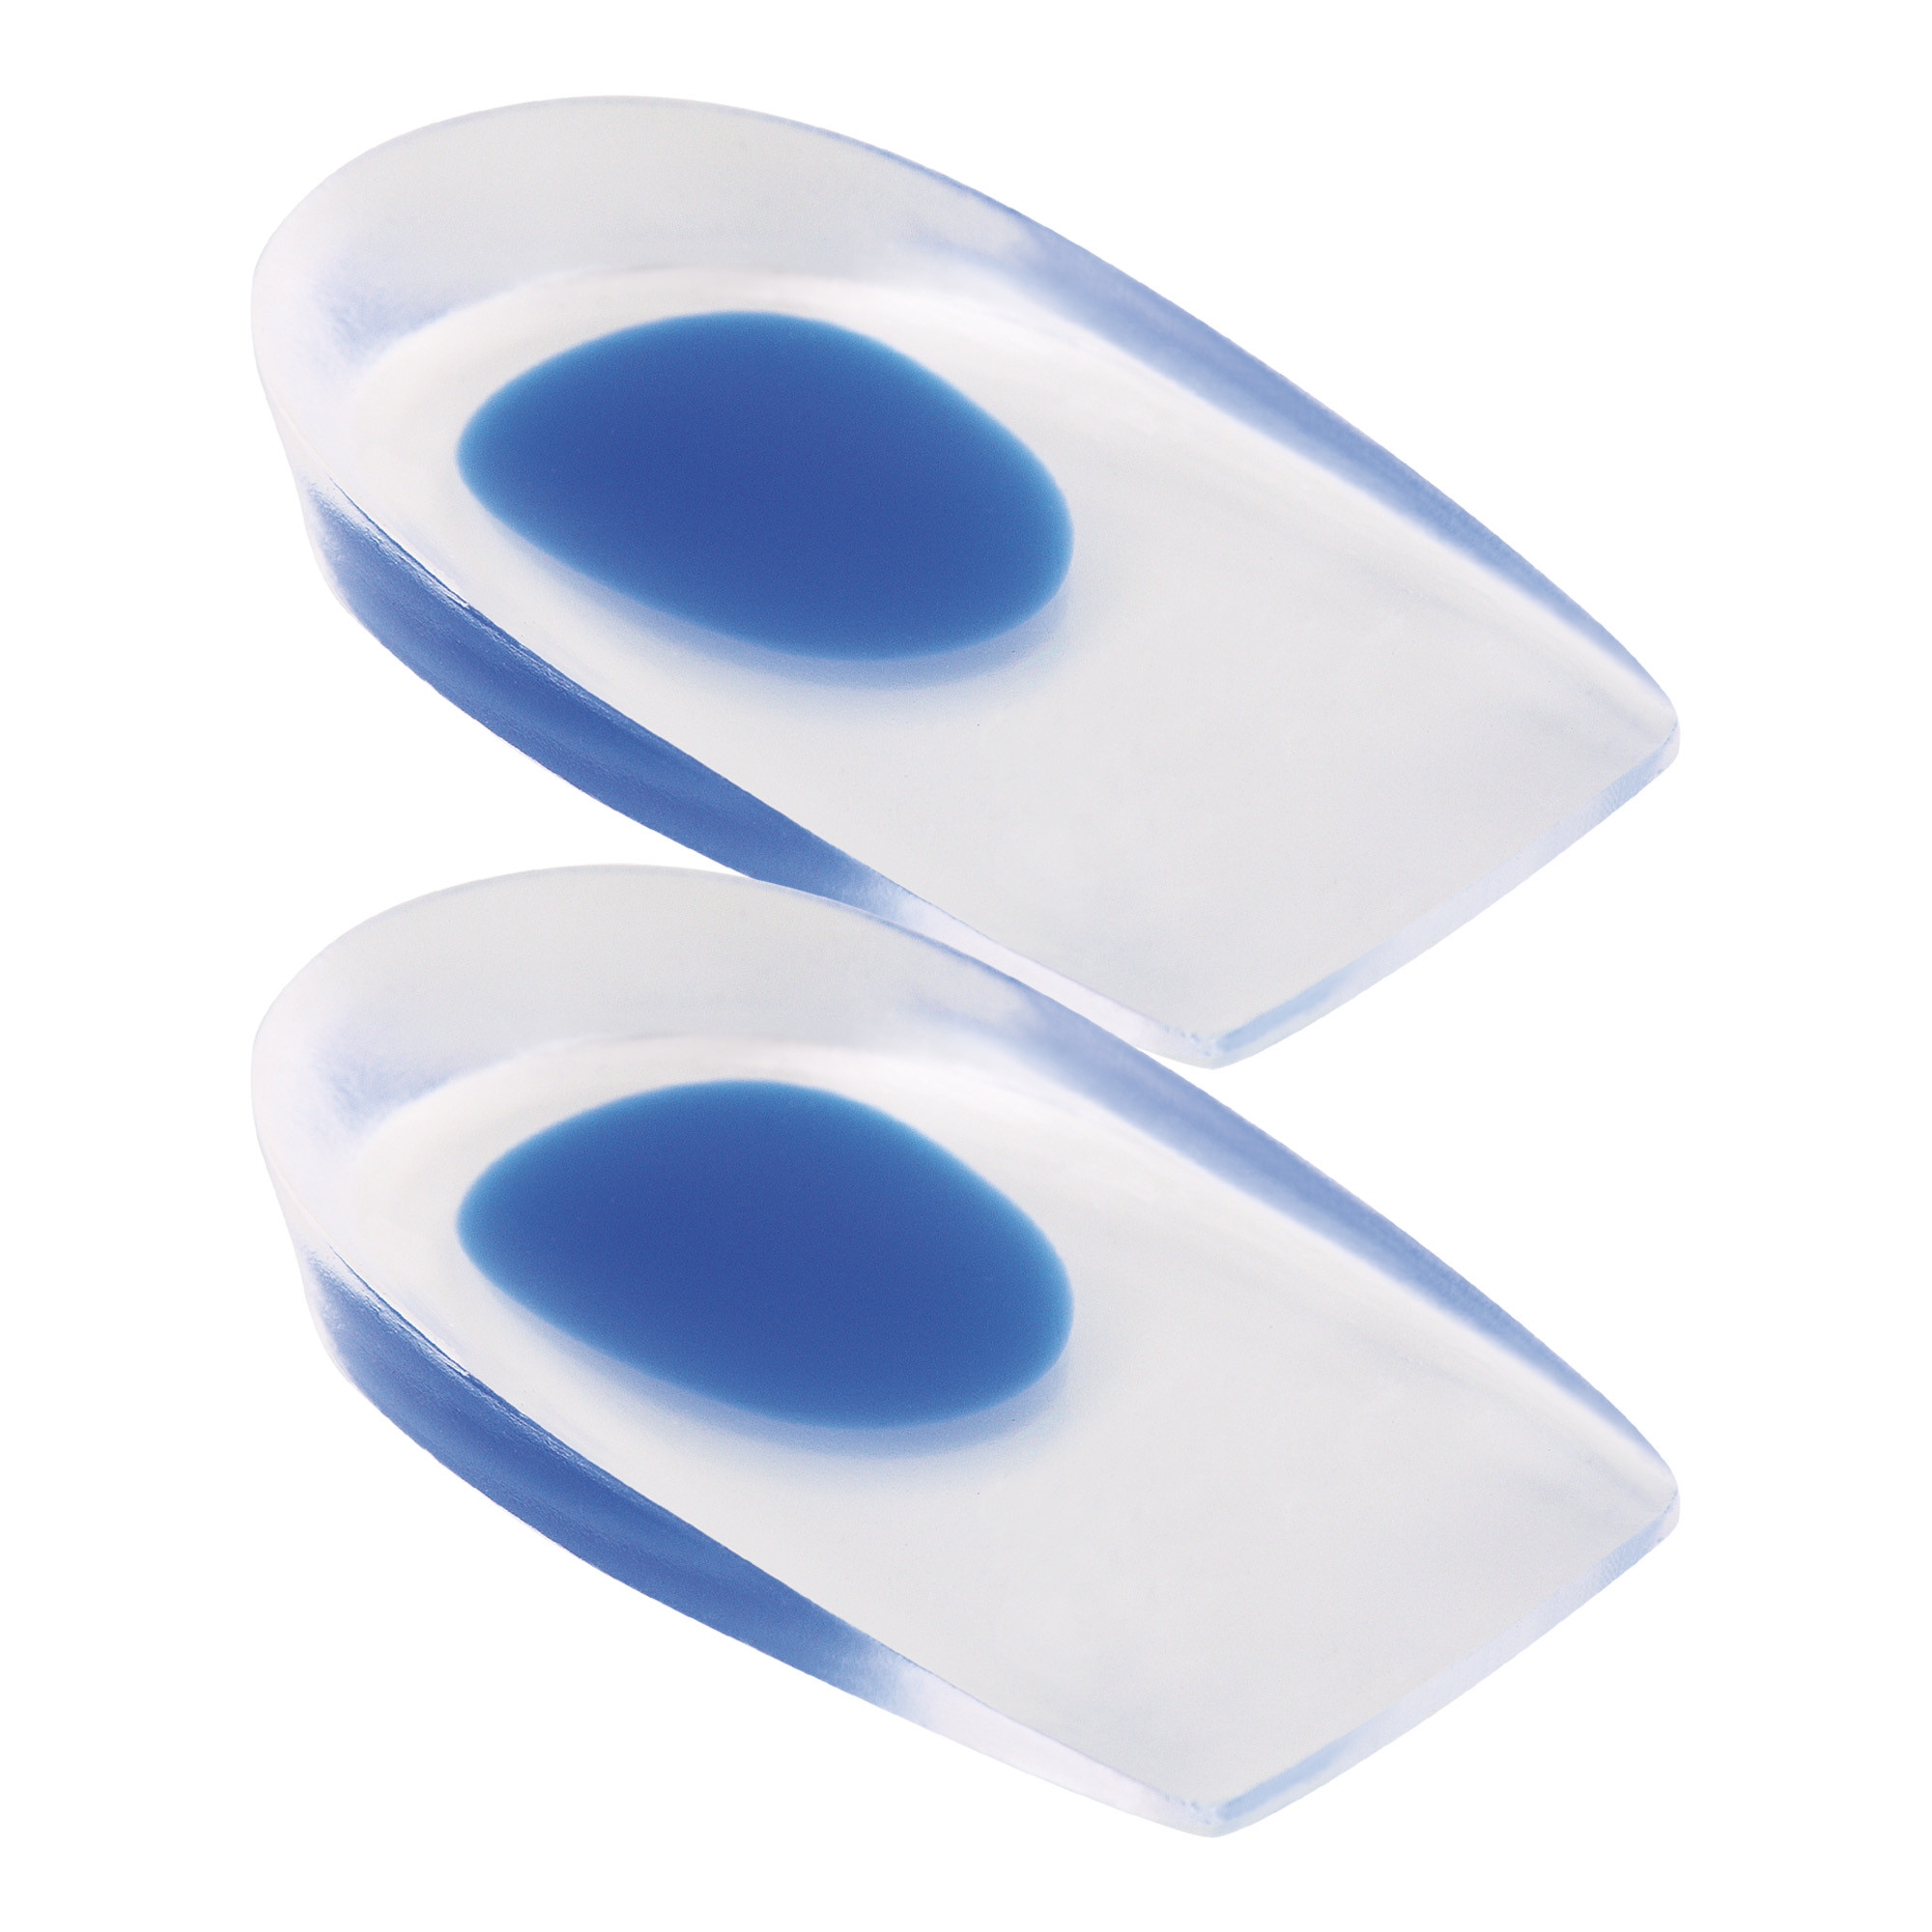 Tecniwork soft enveloping heel pads Display of 8 pack